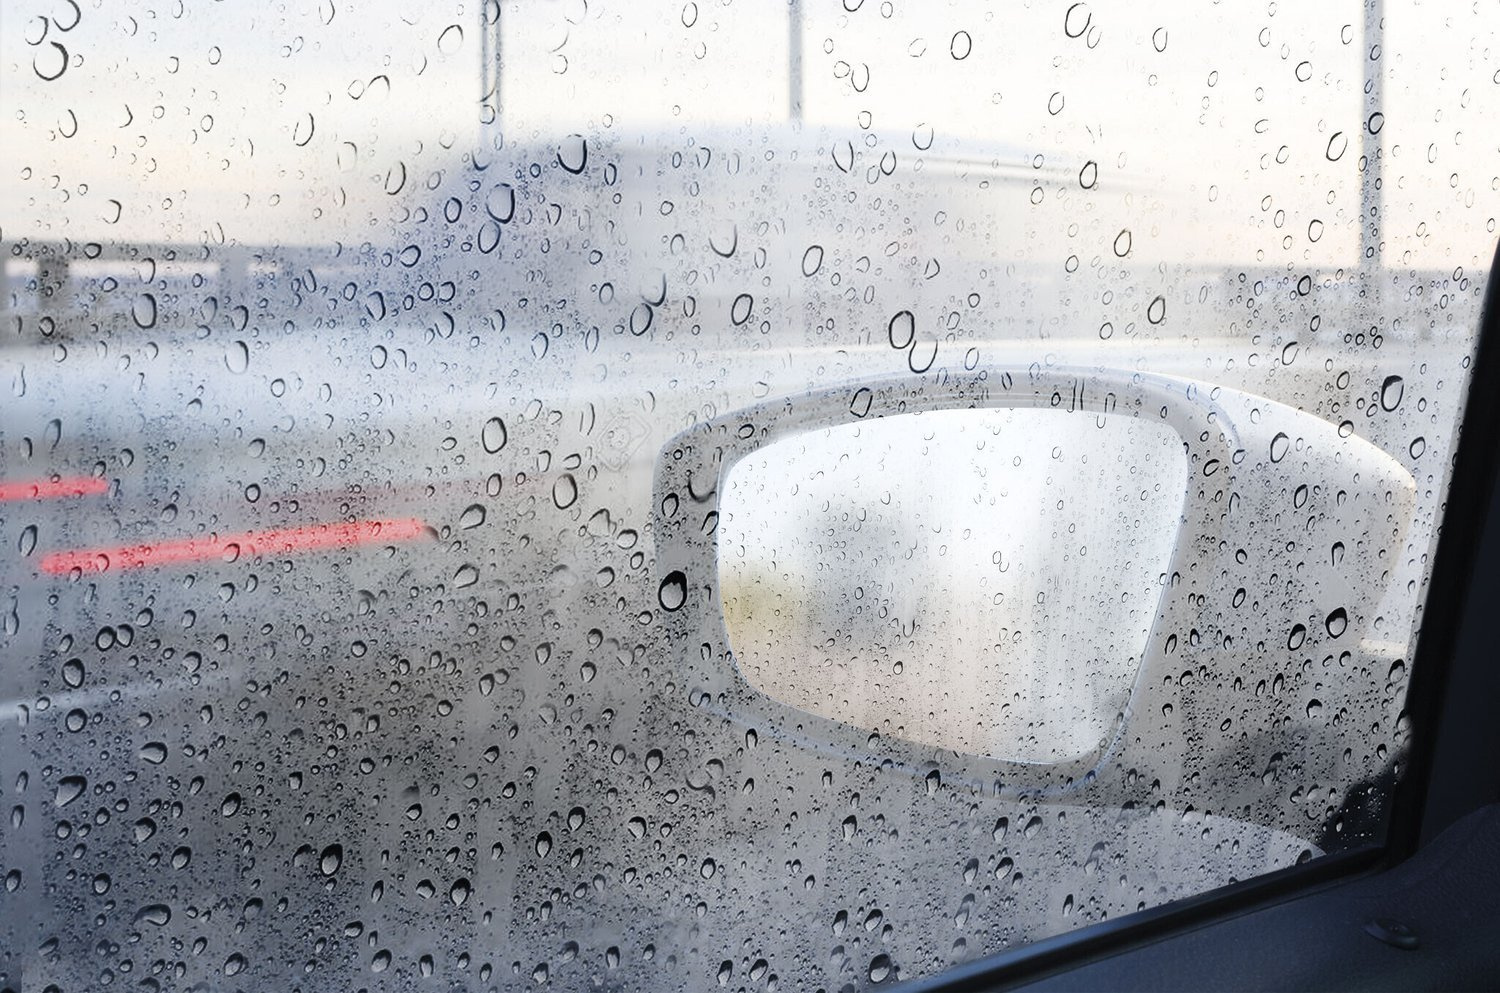 wocpvm 2 Paar Auto Rückspiegel Regenschutz Rückspiegel Regen Augenbraue  Seitenspiegel Regenschutz,Für Auto SUV LKW Spiegel Auto